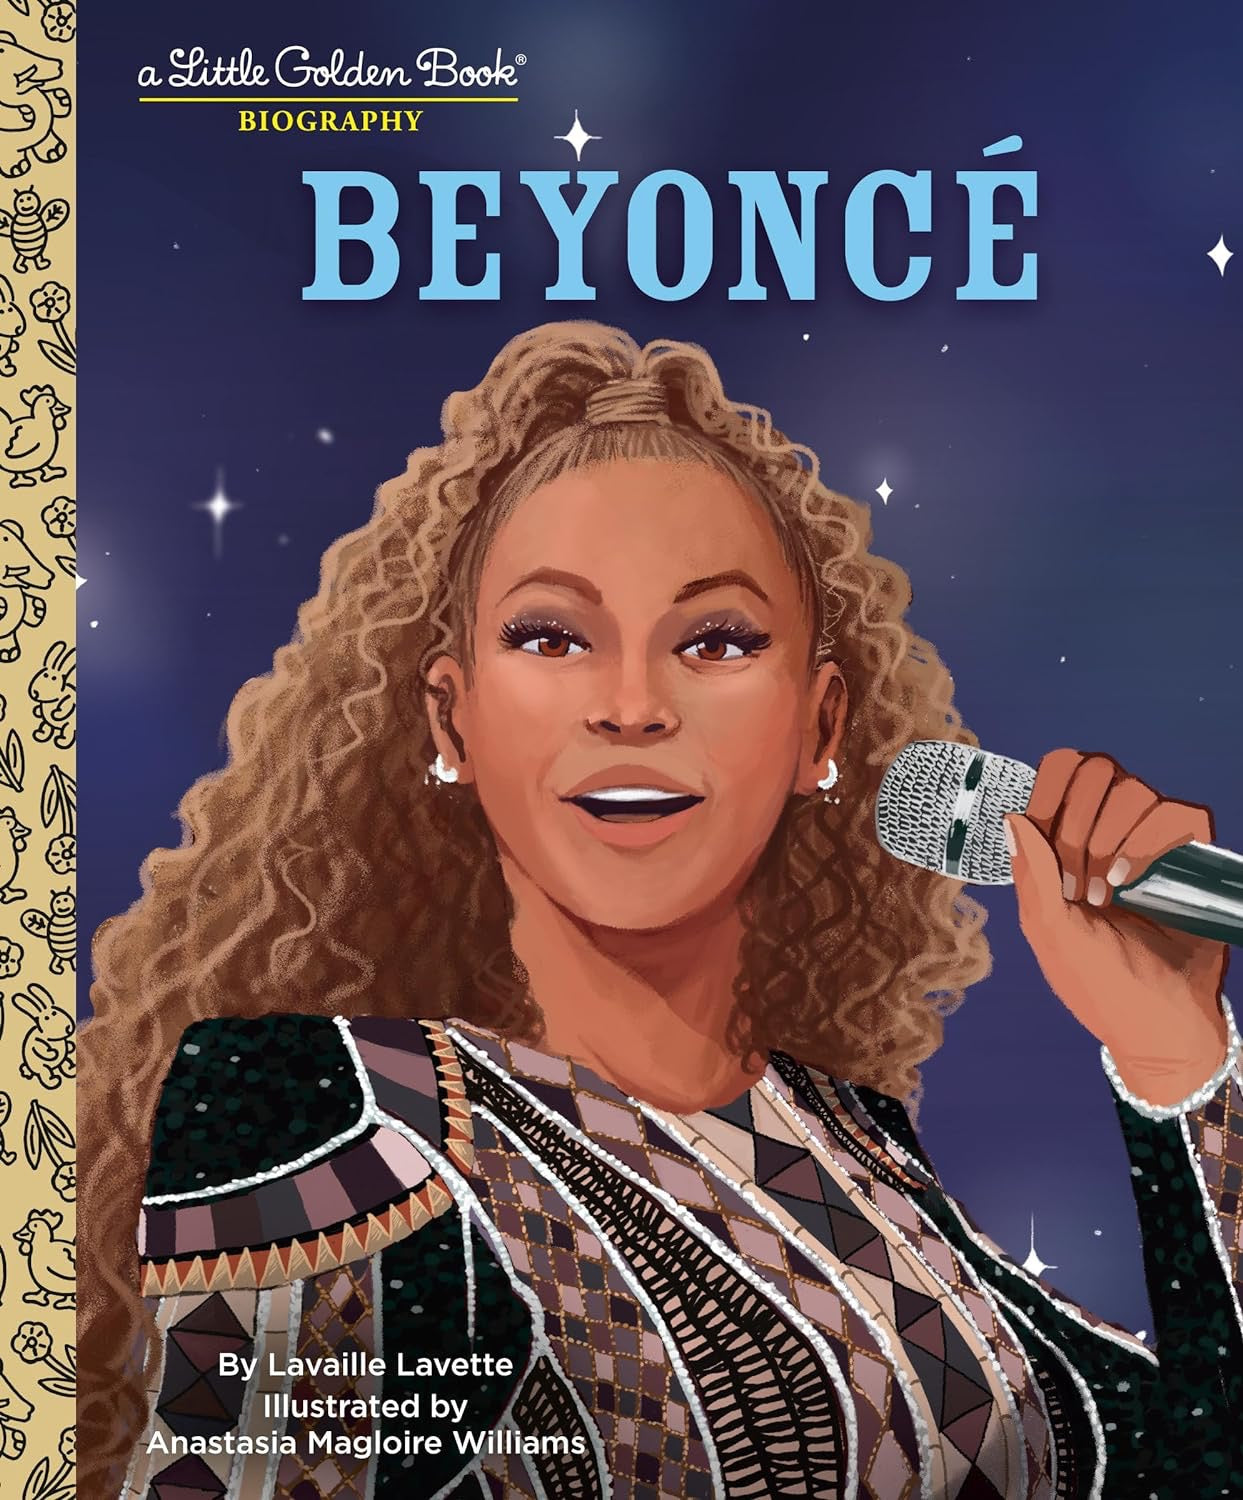 "Beyonce" Little Golden Book